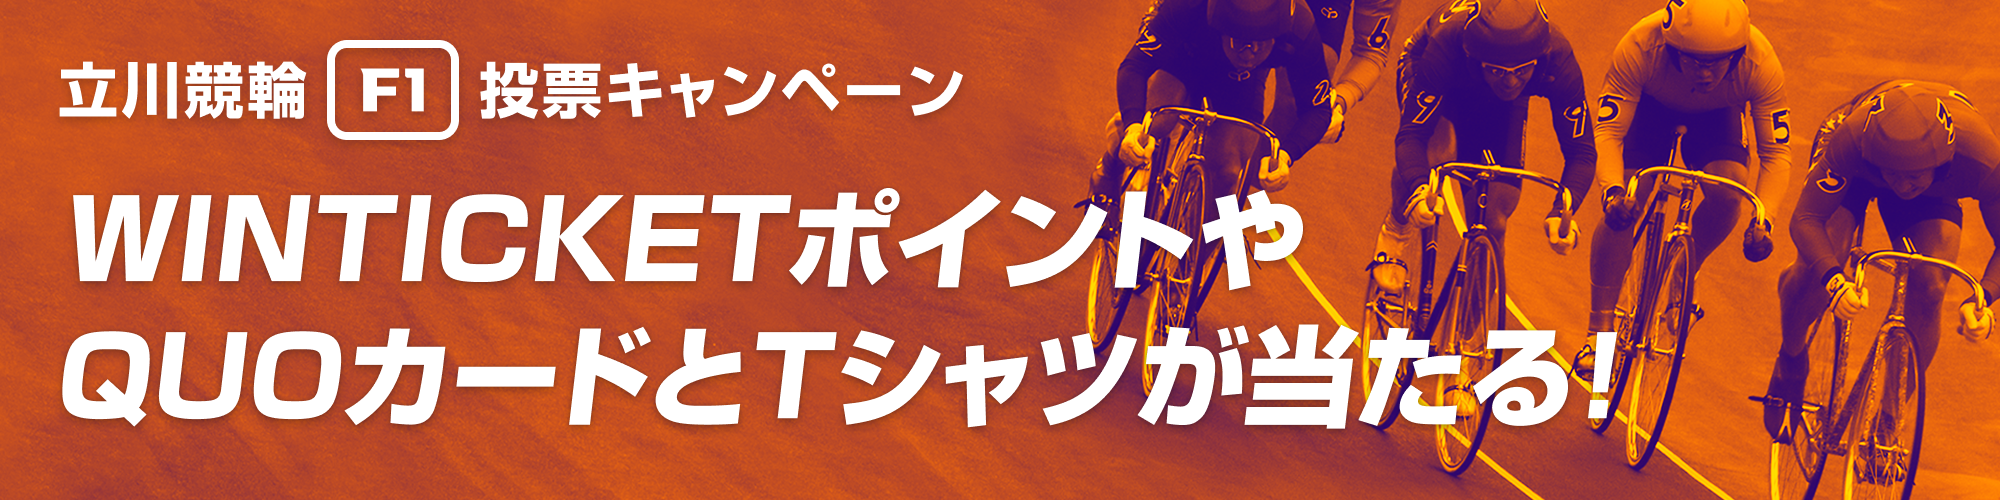 立川競輪投票キャンペーンのバナー画像